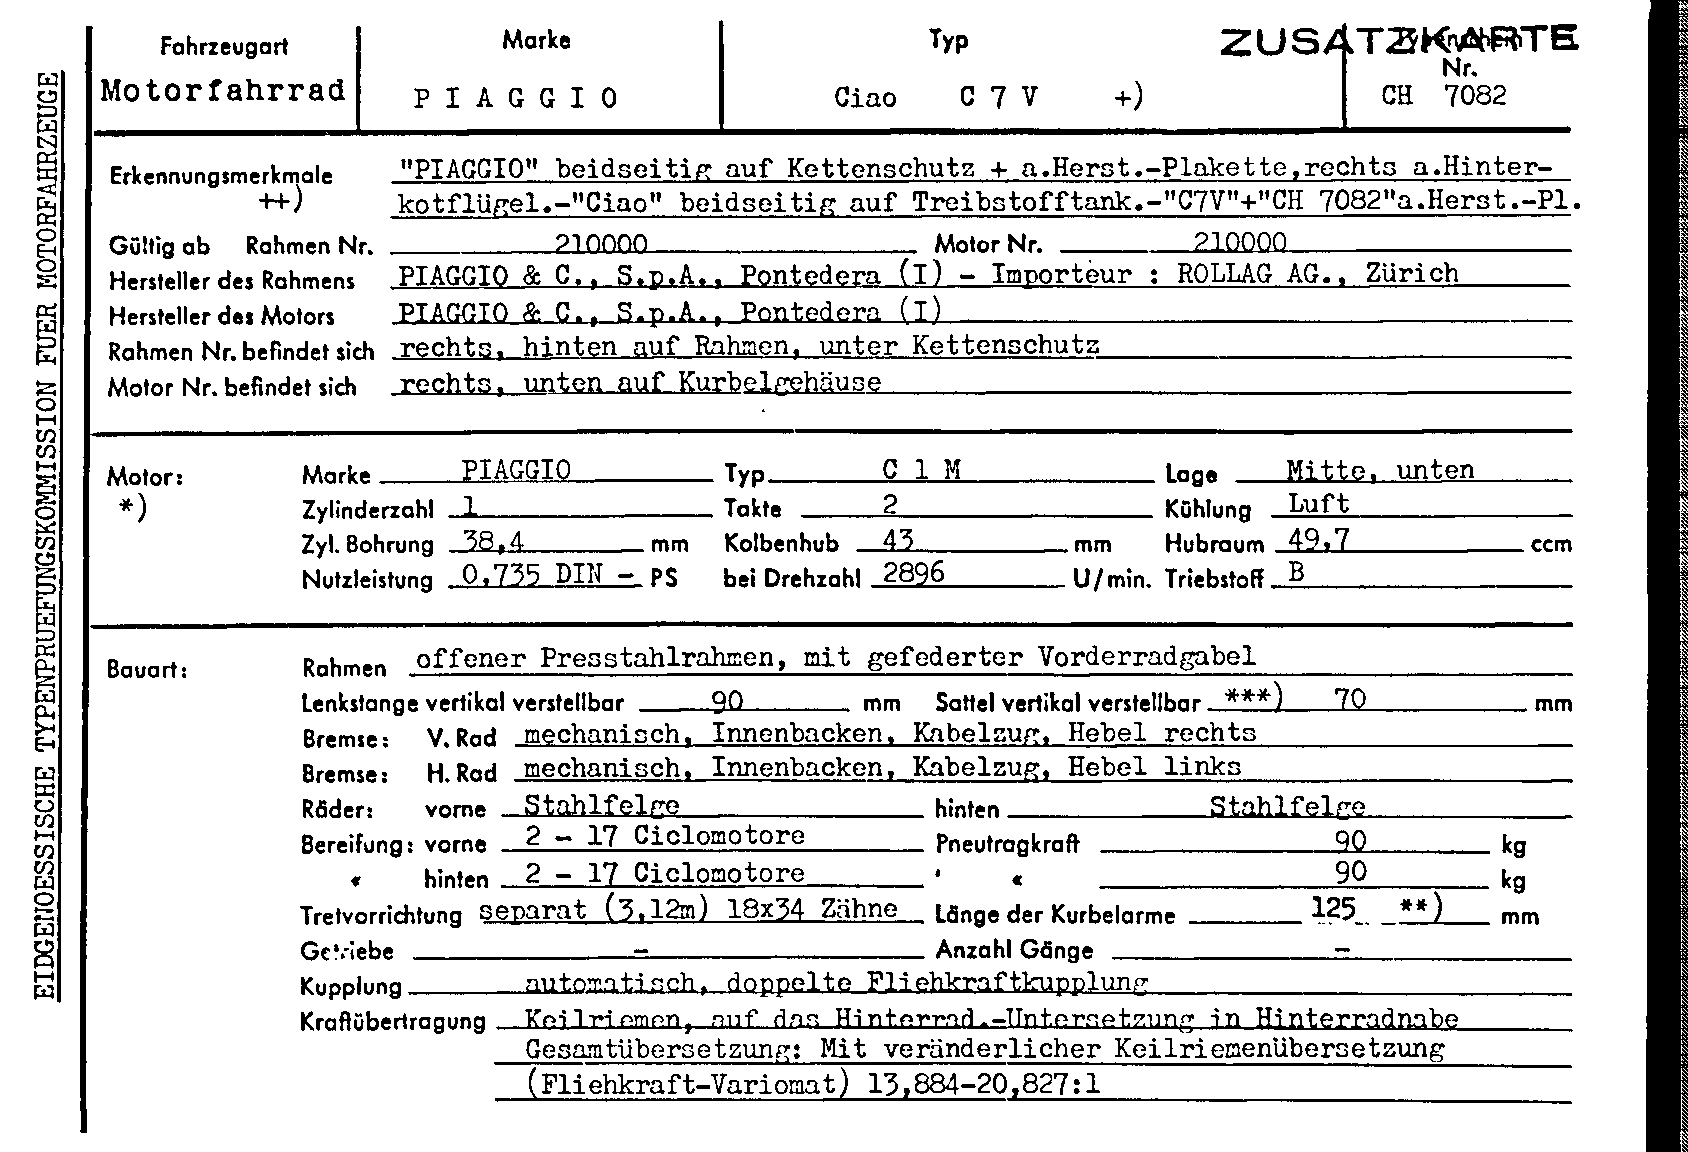 Schweizer Typenschein 7082 Deutsch Seite 1 (TG.DE.7082.1.png)